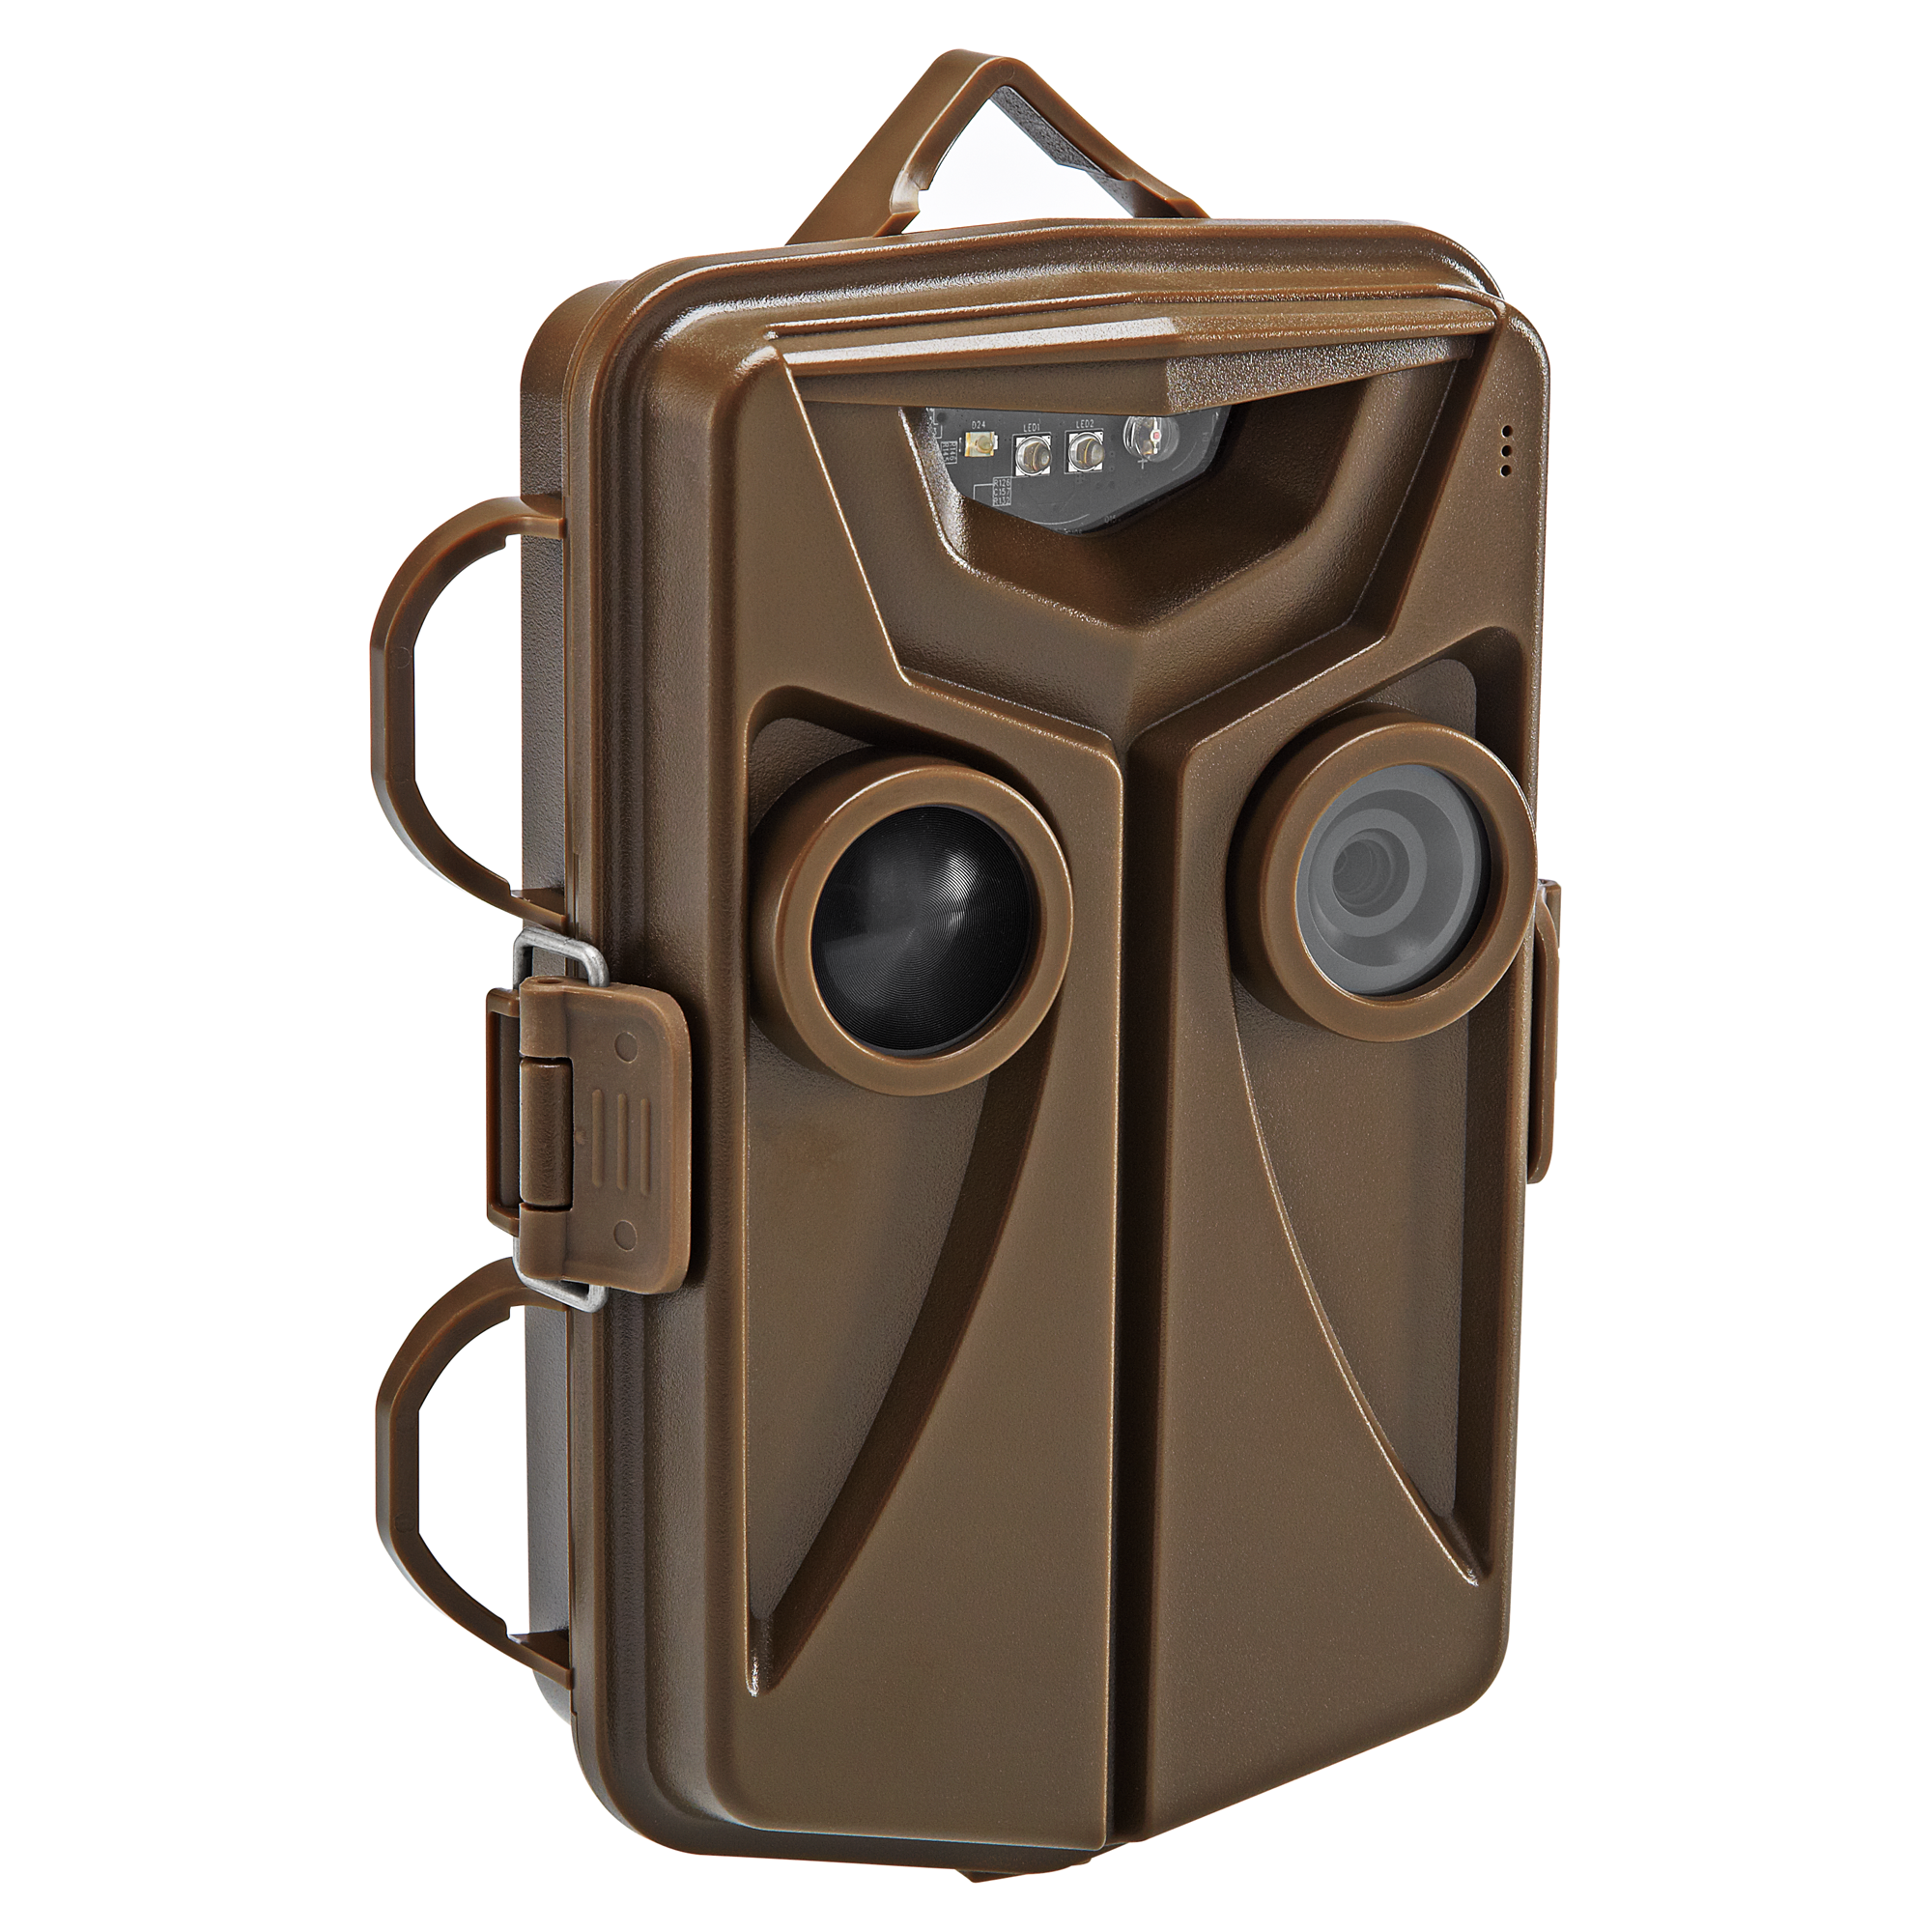 Wildtierkamera TX-44 braun + product picture